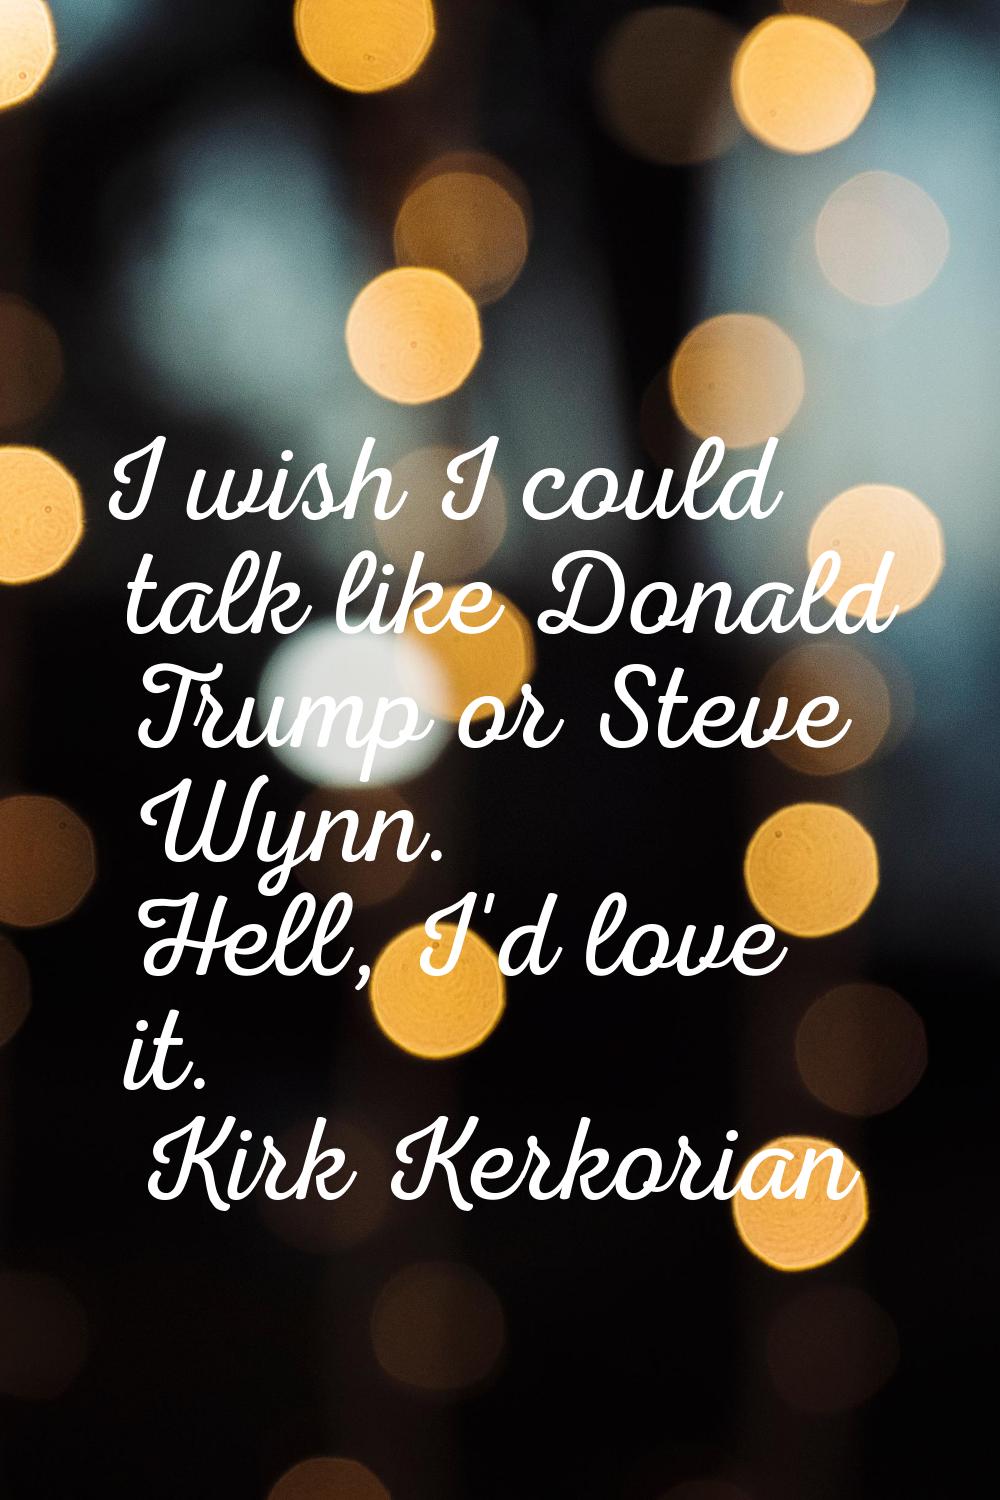 I wish I could talk like Donald Trump or Steve Wynn. Hell, I'd love it.